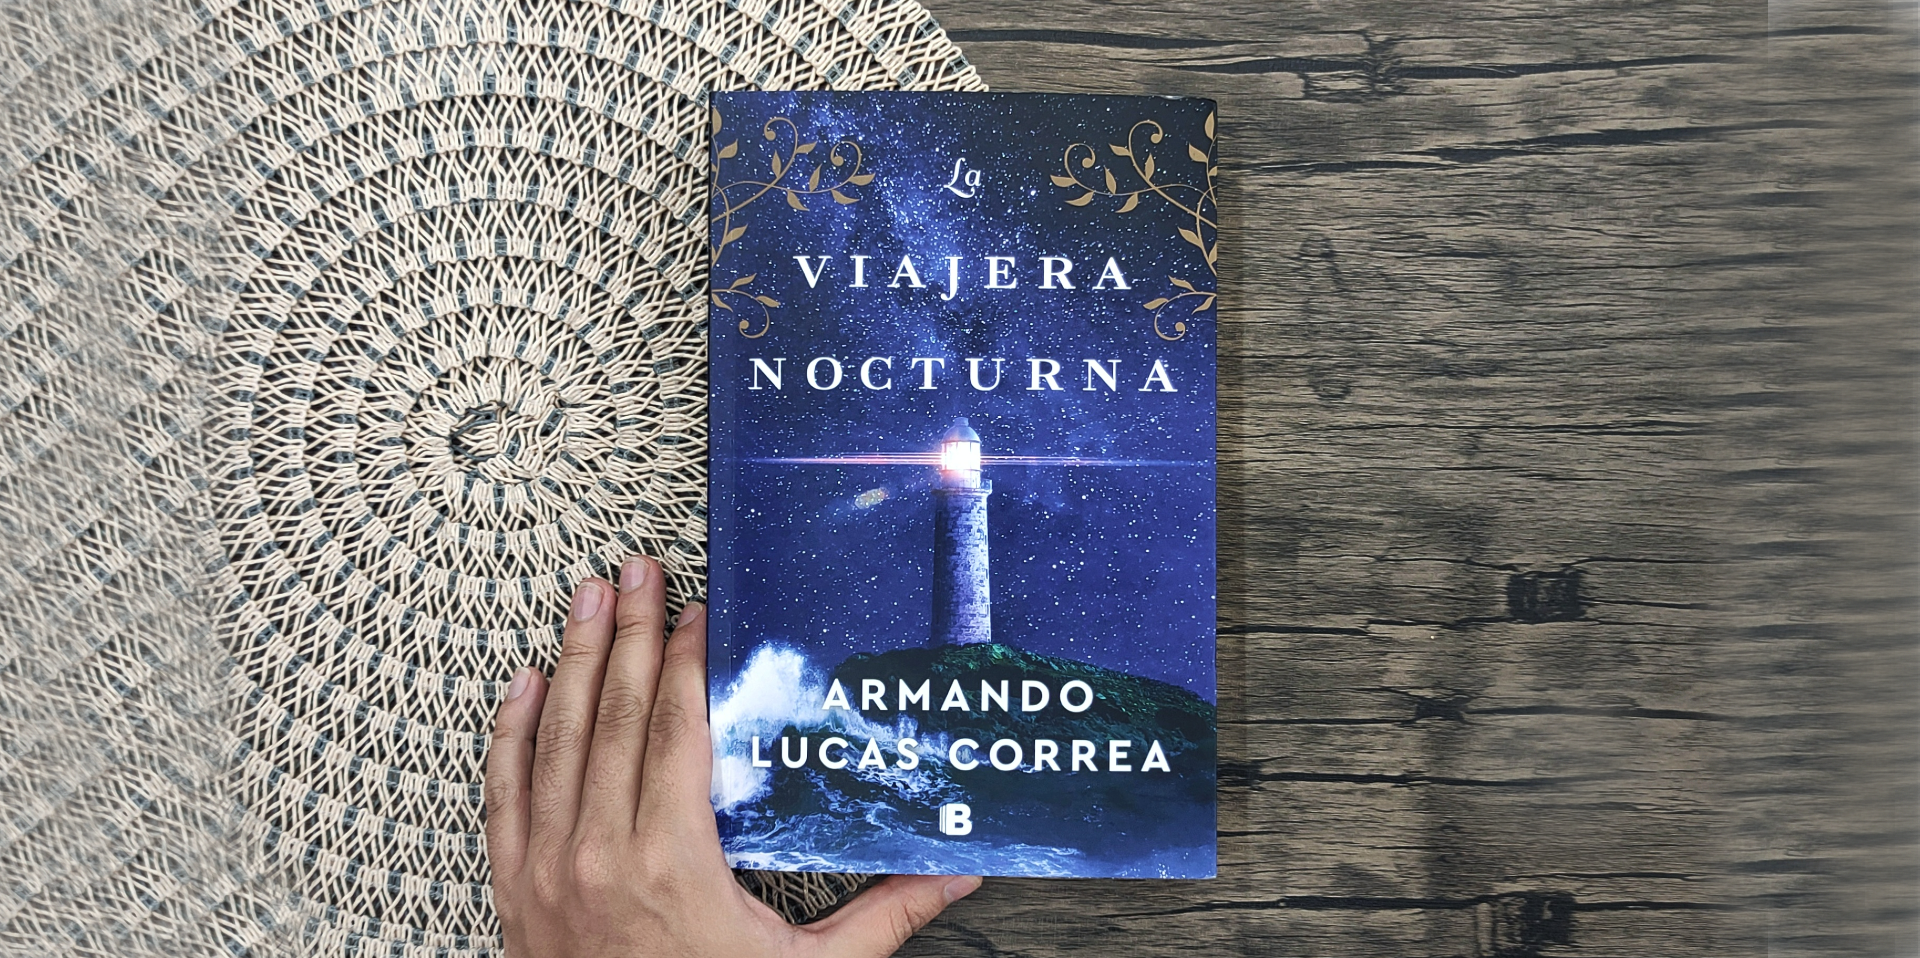 Imagen del libro "La viajera nocturna", de Armando Lucas Correa. (Liberando Letras).